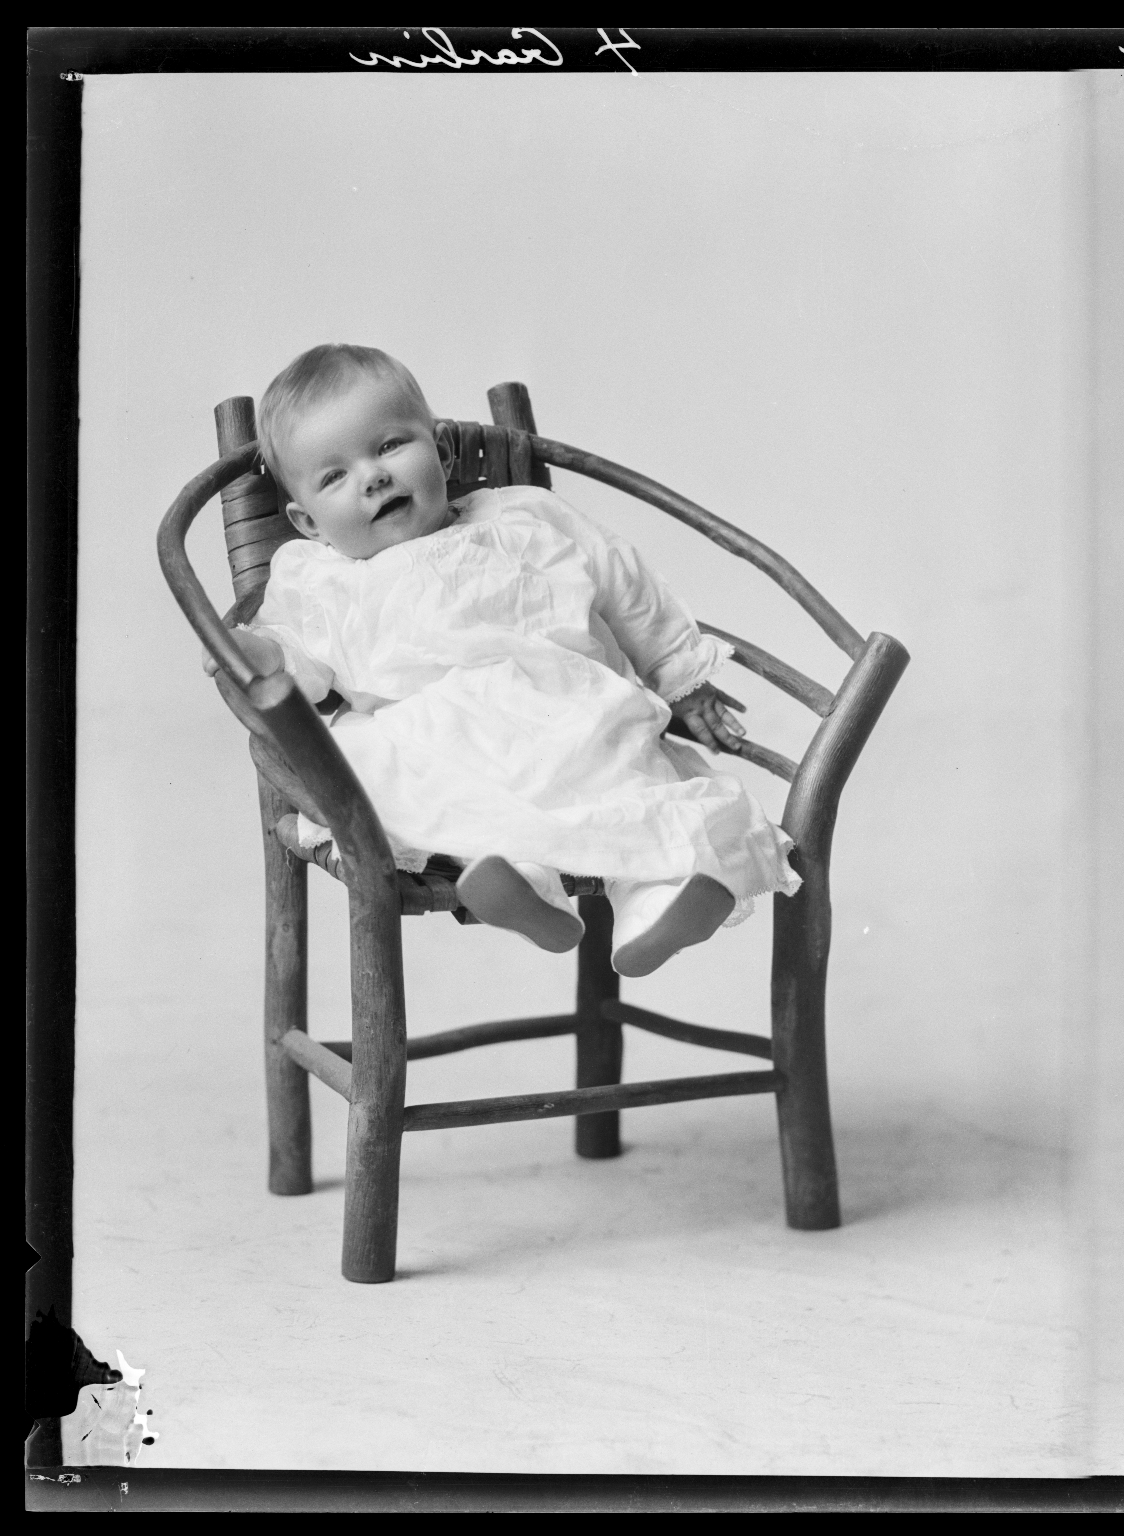 Portraits of S. Slizeski's child